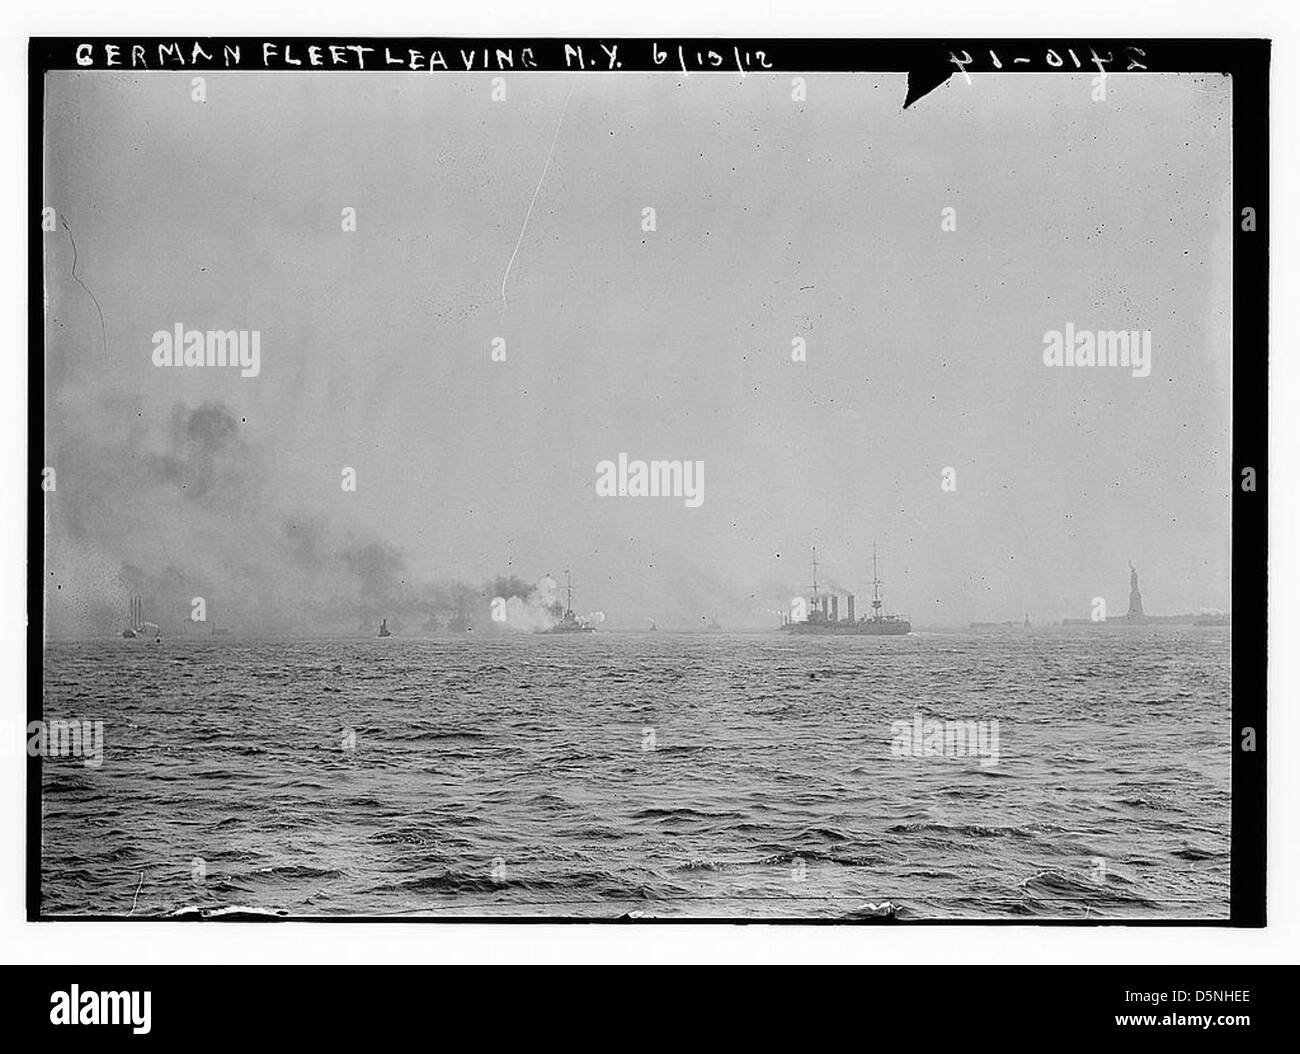 German Fleet leaving N.Y. June 1912 (LOC) Stock Photo